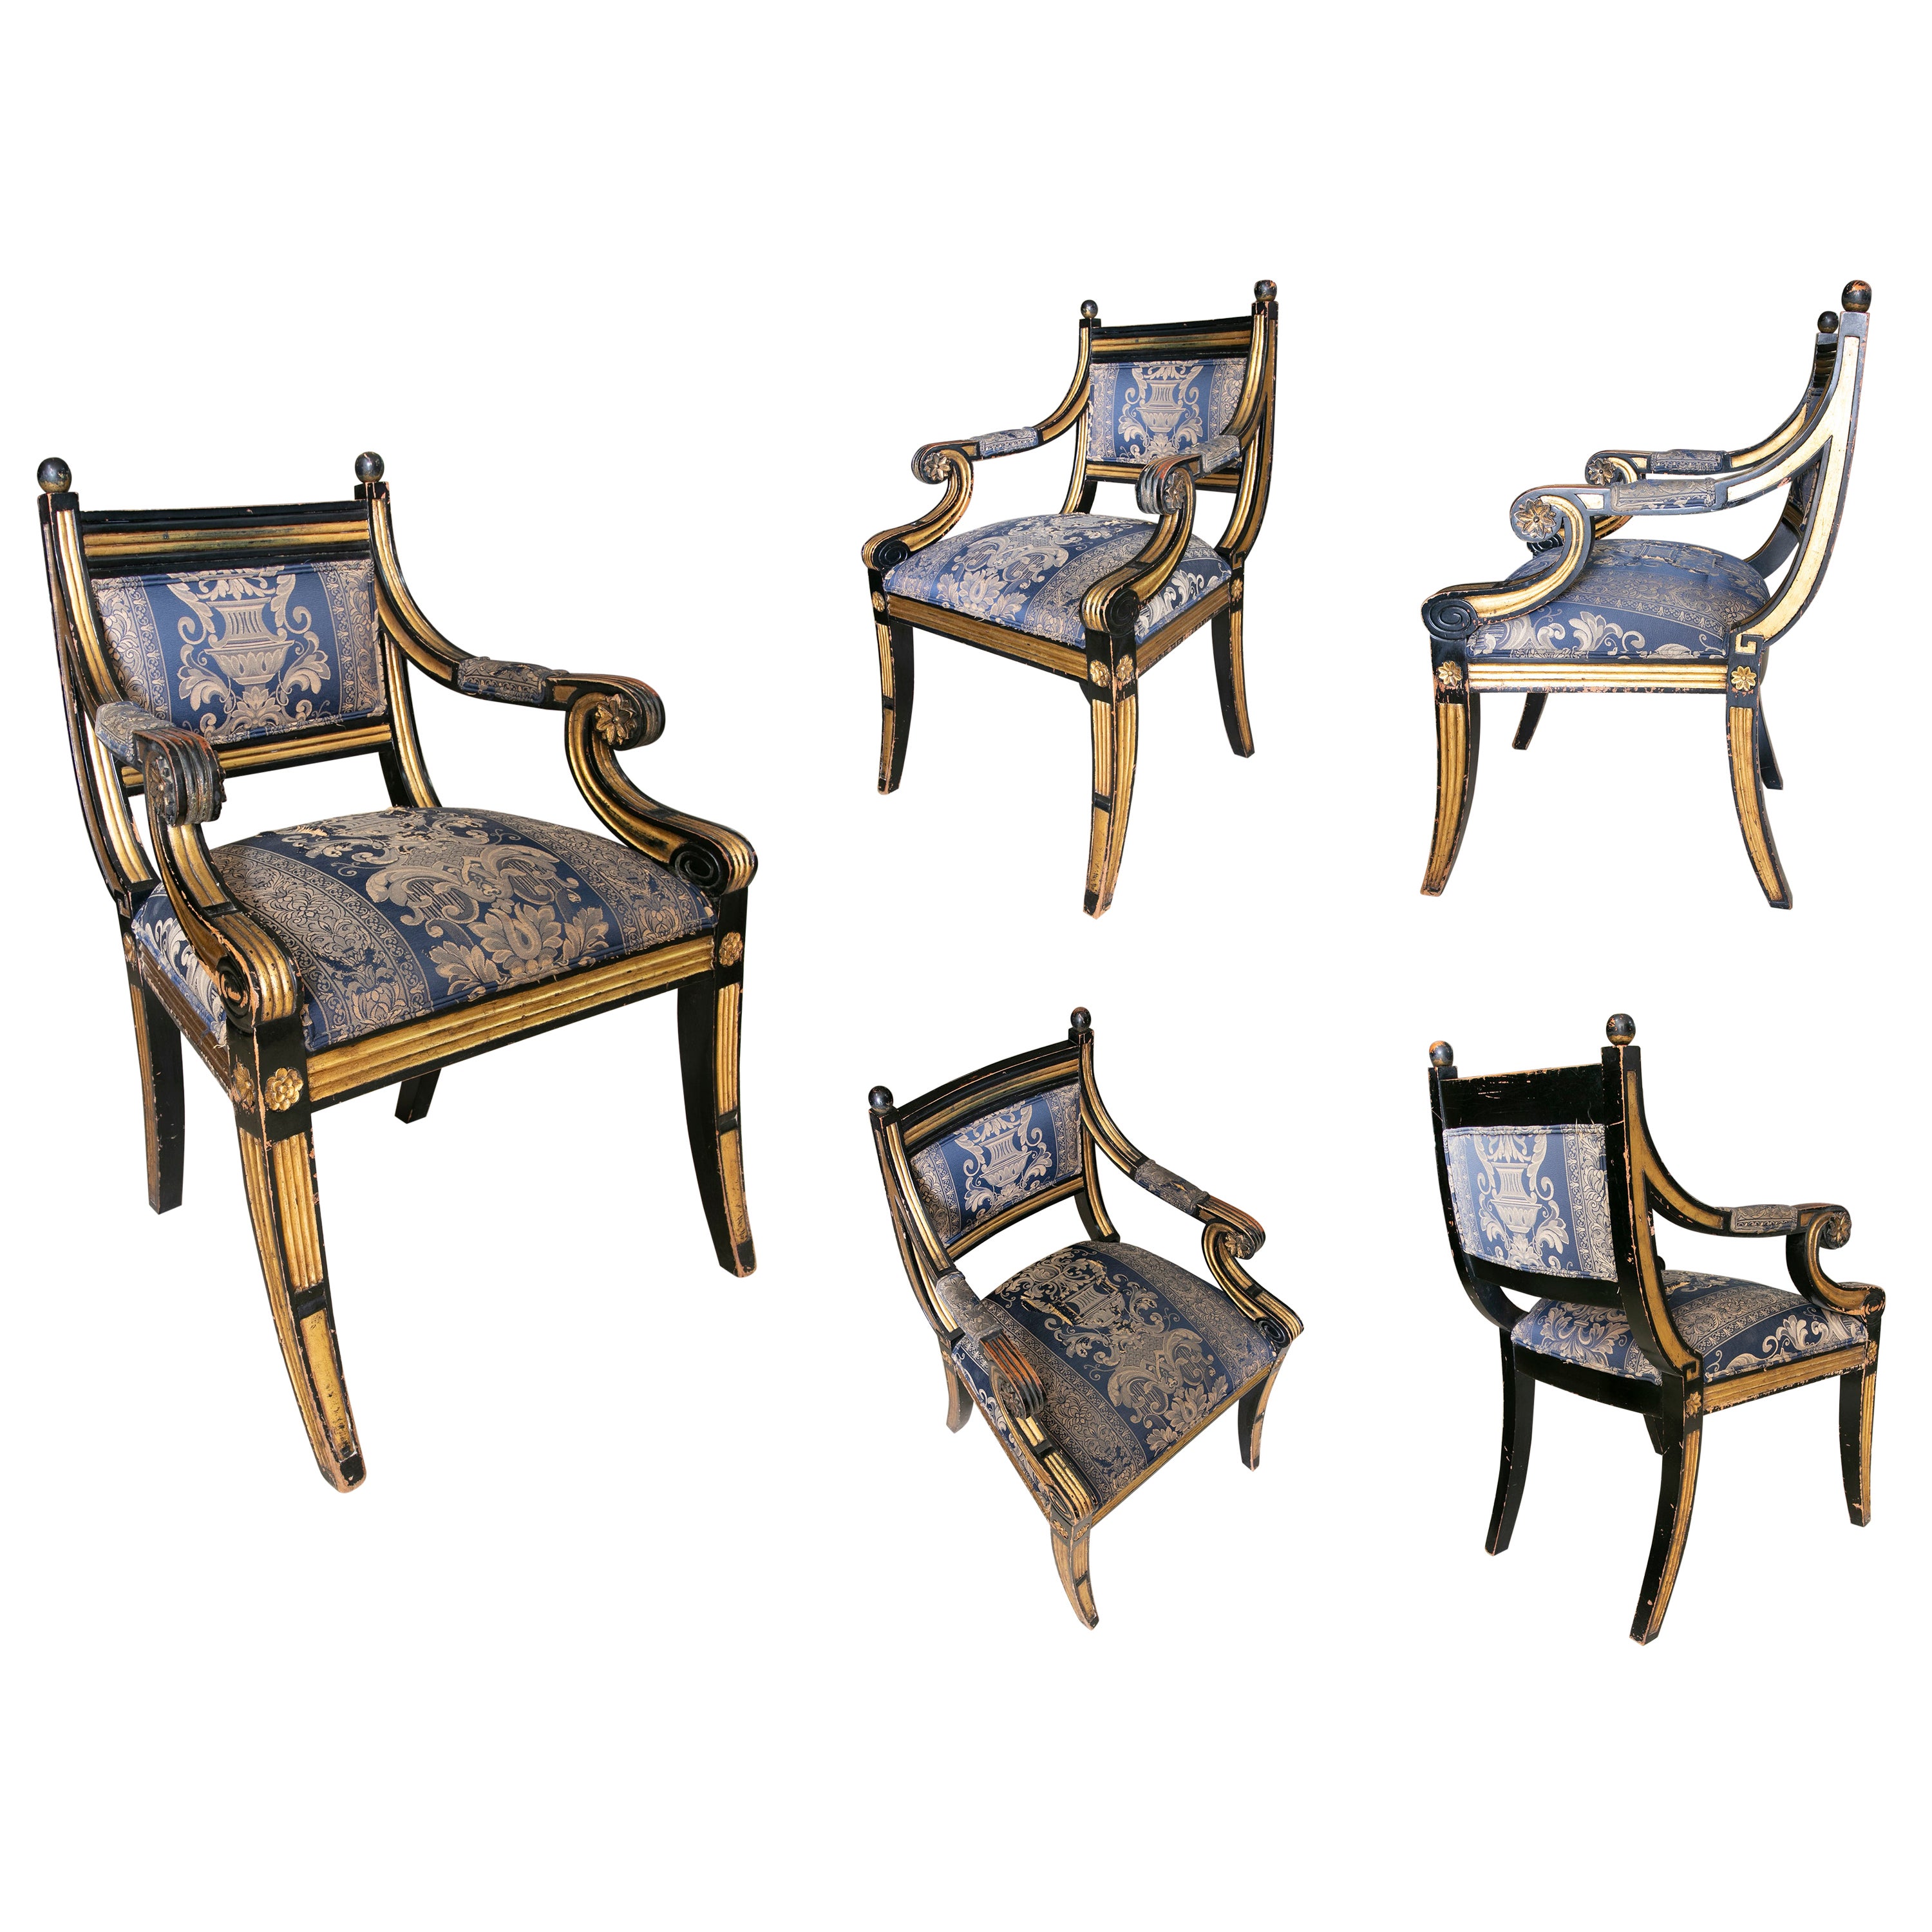 Quatre-vingt-quatre chaises en bois de style franais tapisses